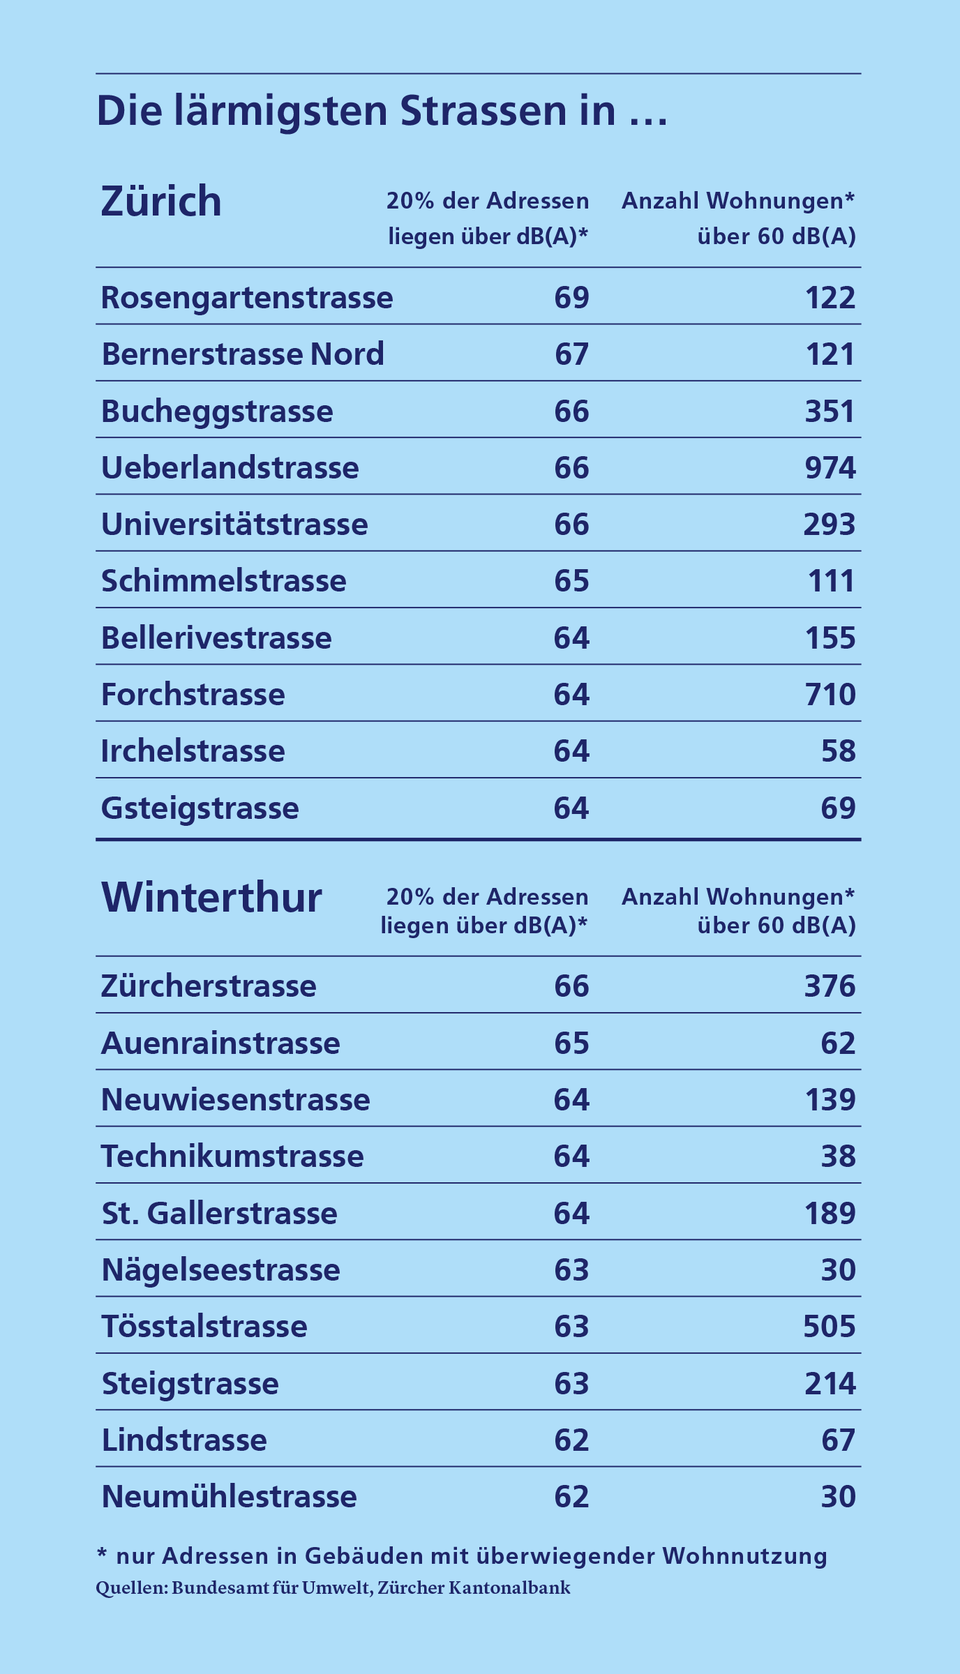 Tabelle: die lärmigsten Strassen in Zürich und Winterthur